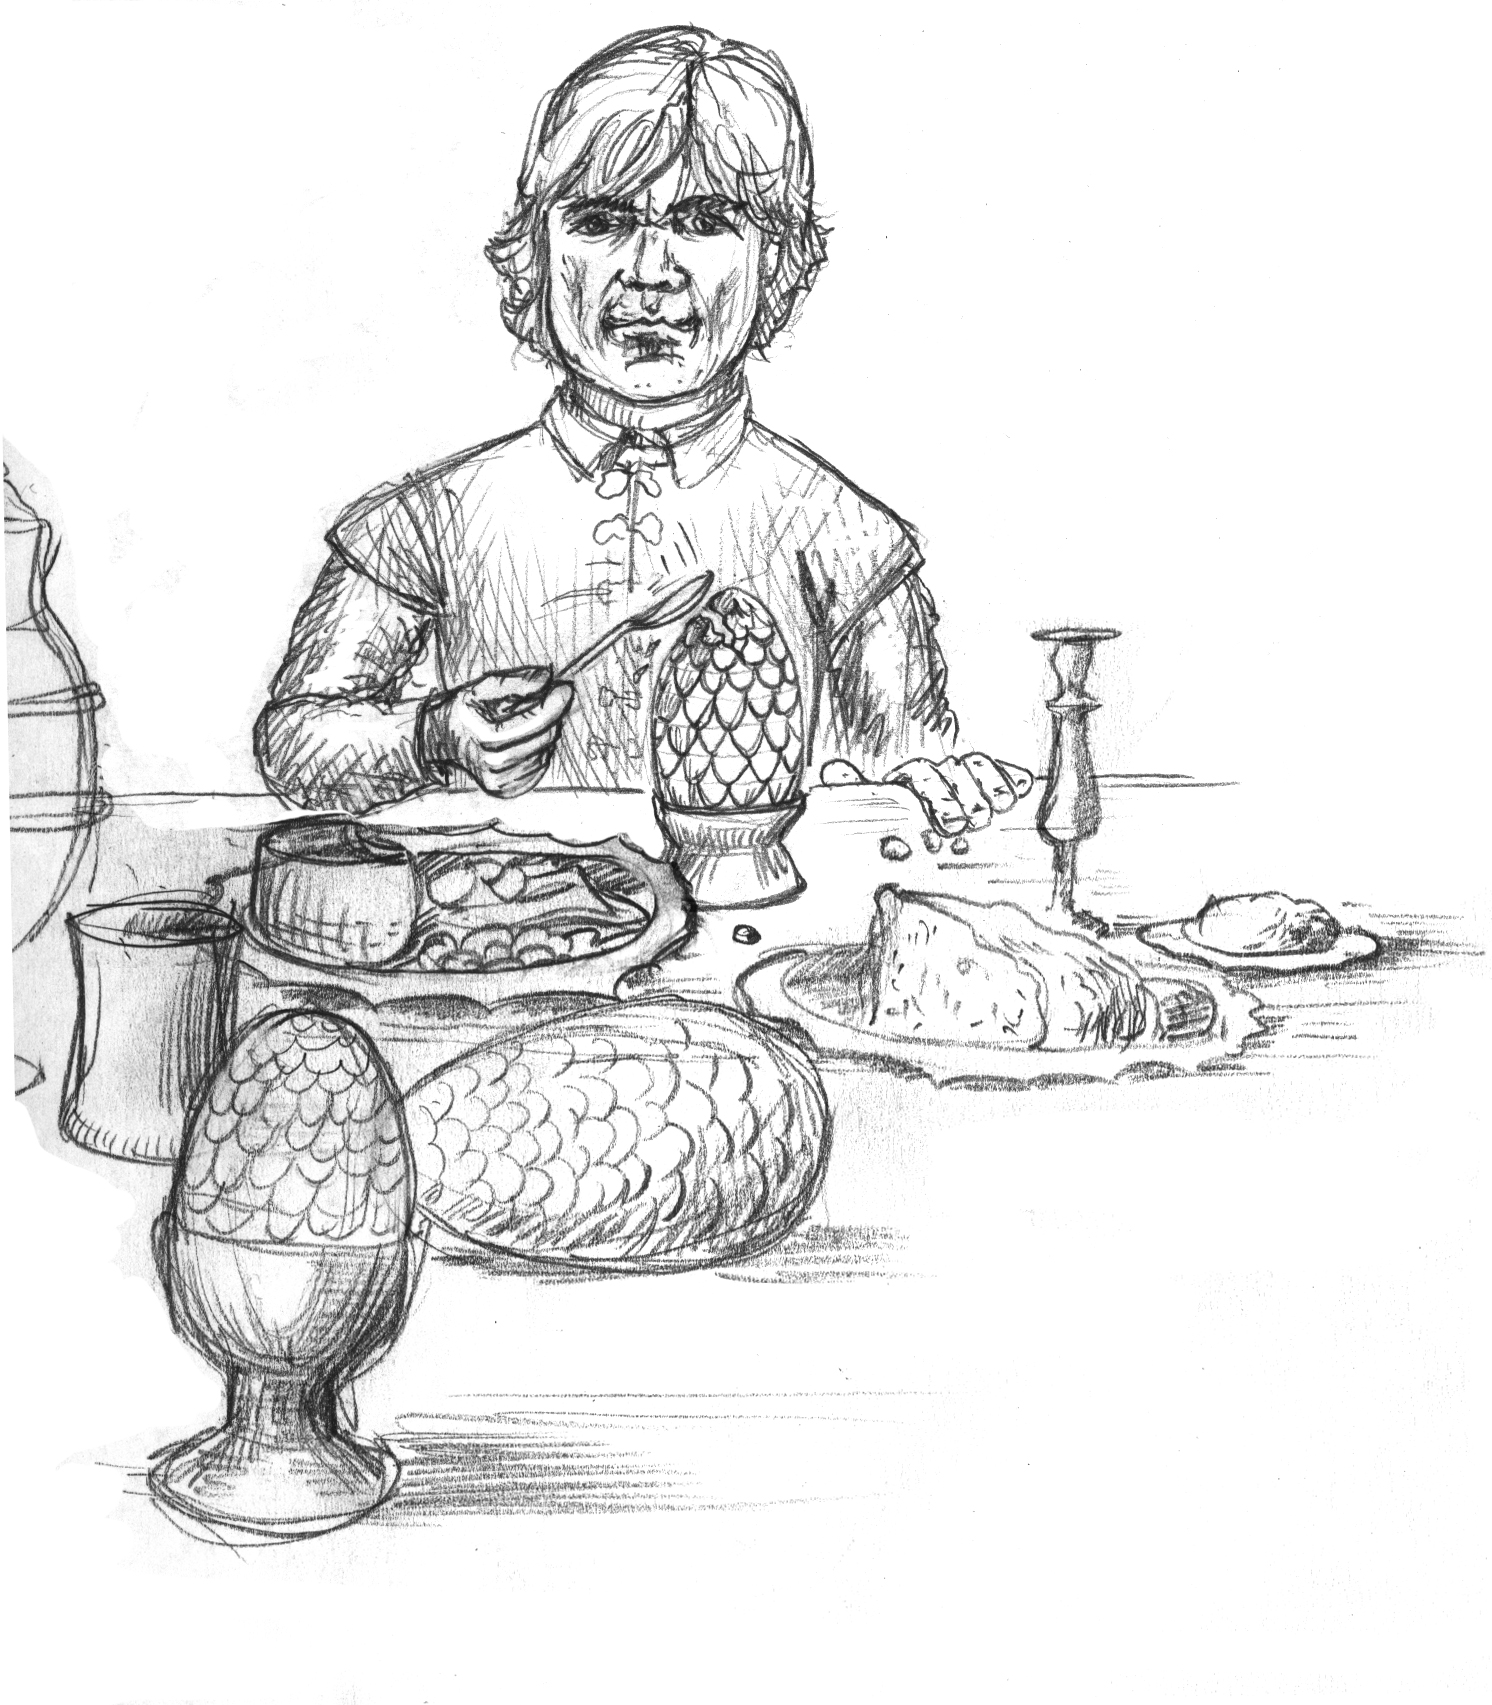  Tyrion Lennister, sketch, dragon eggs for breakfast, 